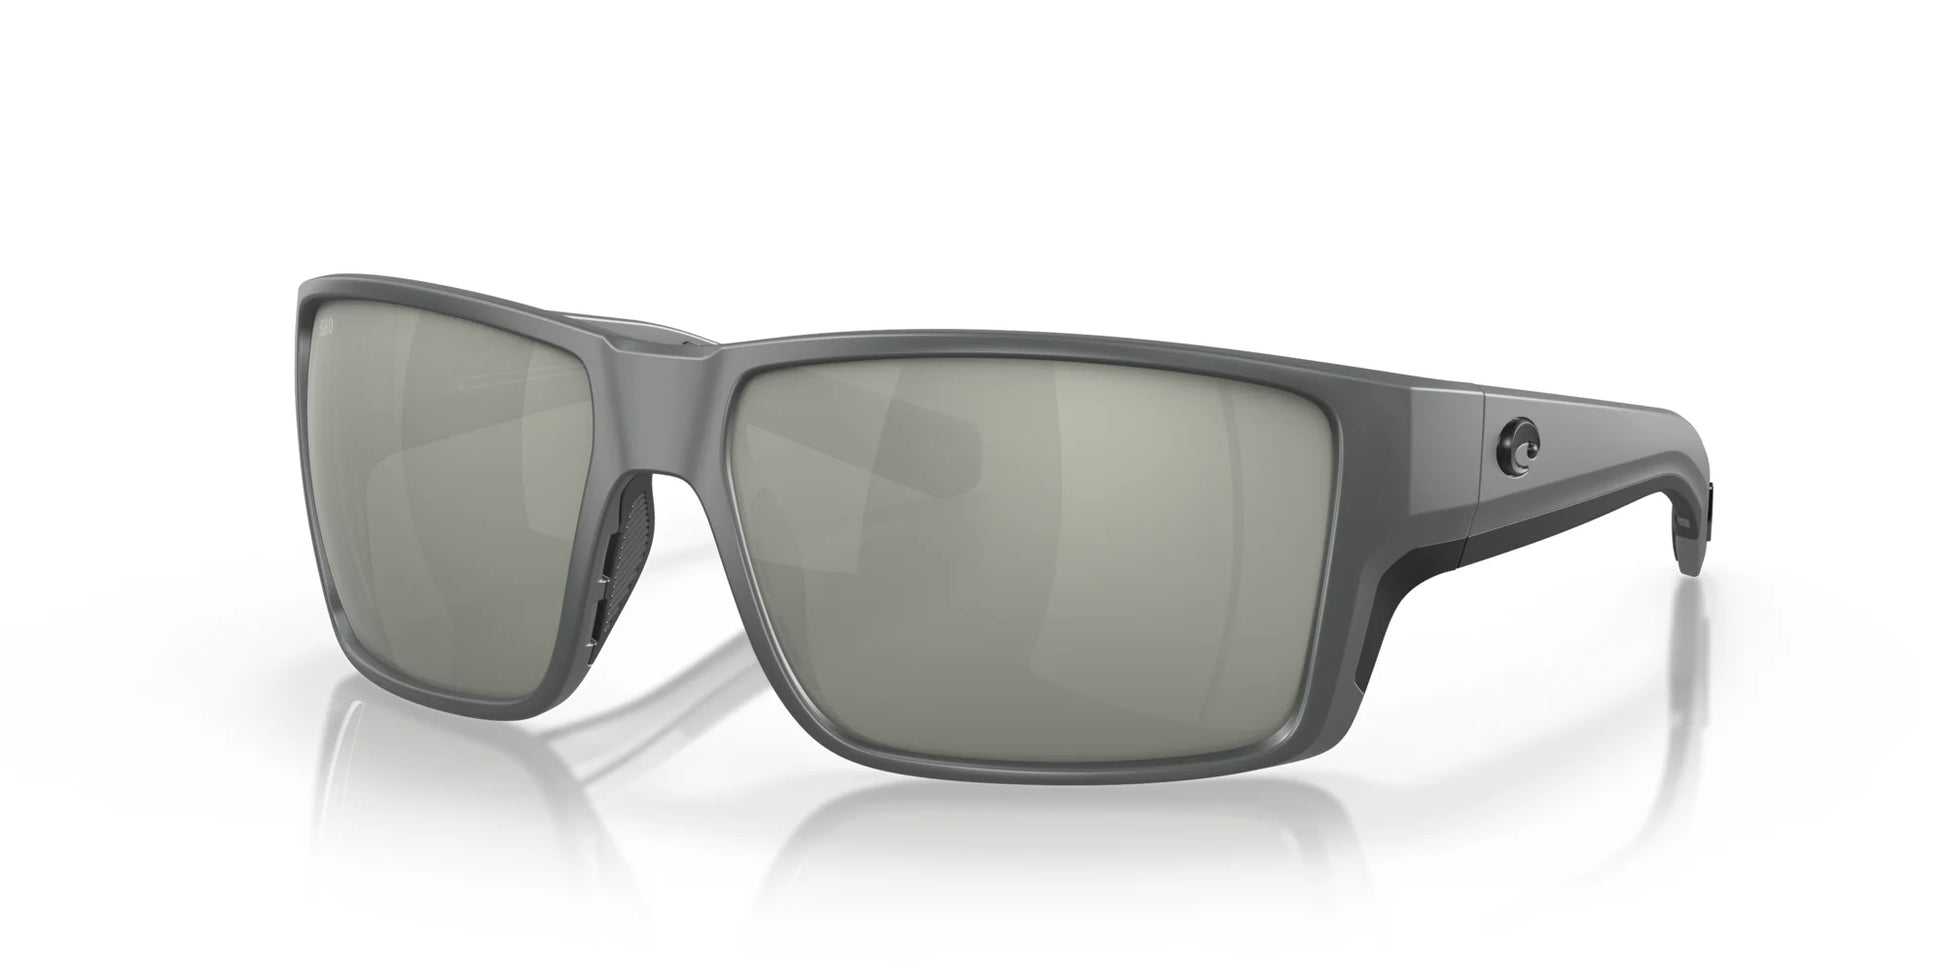 Costa REEFTON PRO 6S9080 Sunglasses Matte Gray / Gray Silver Mirror